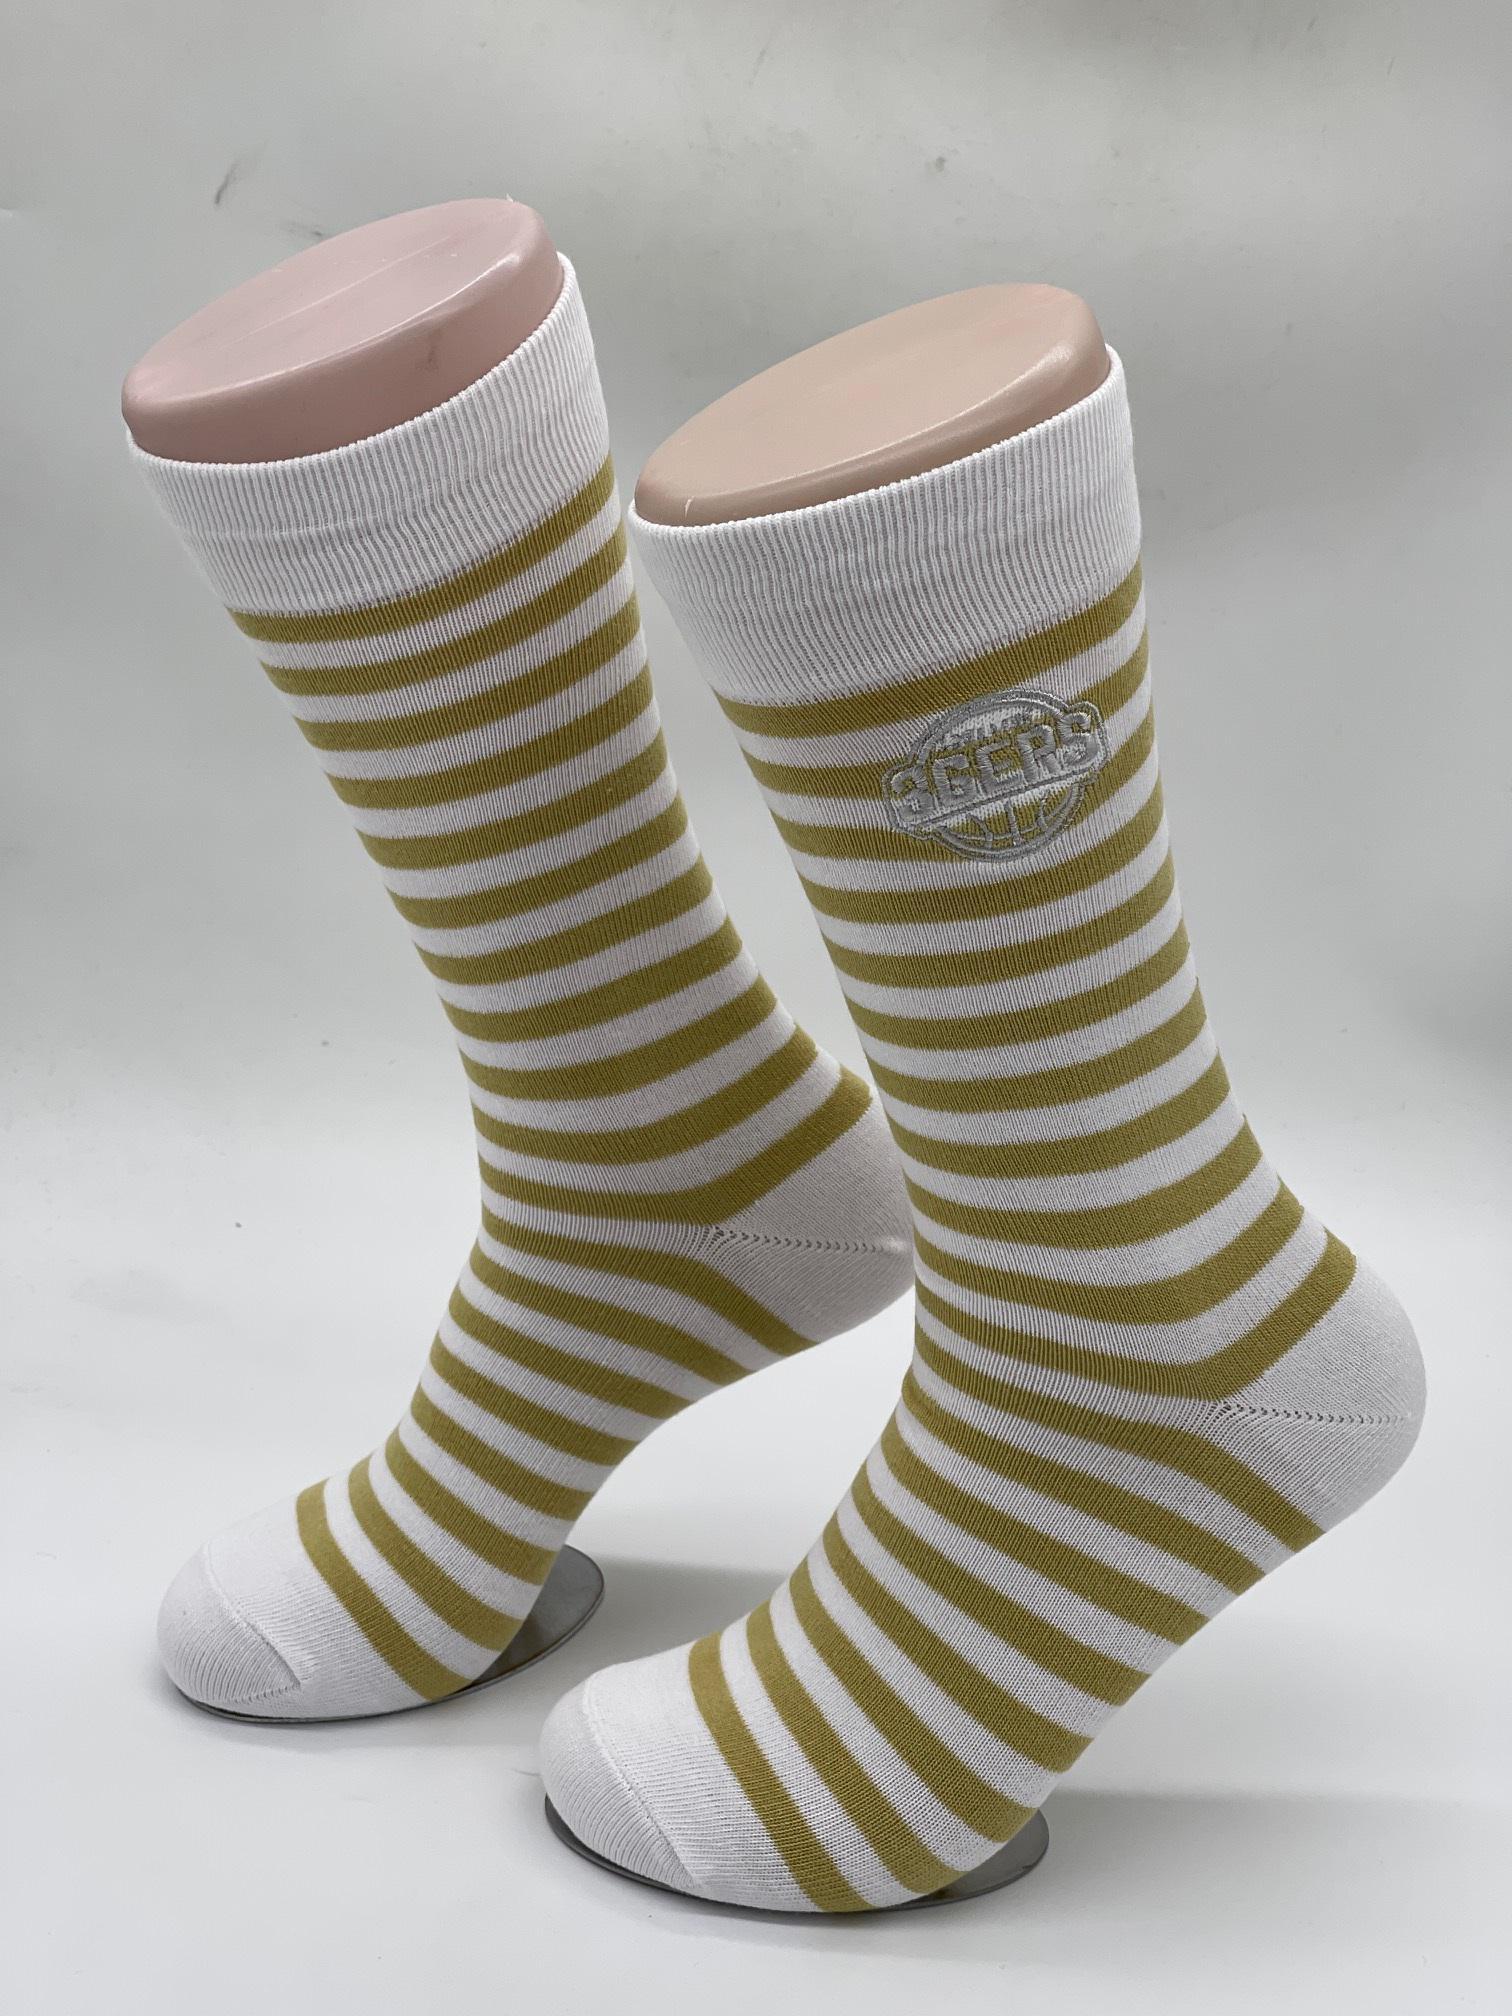 White Gold Hooped Business Socks - Adelaide 36ers